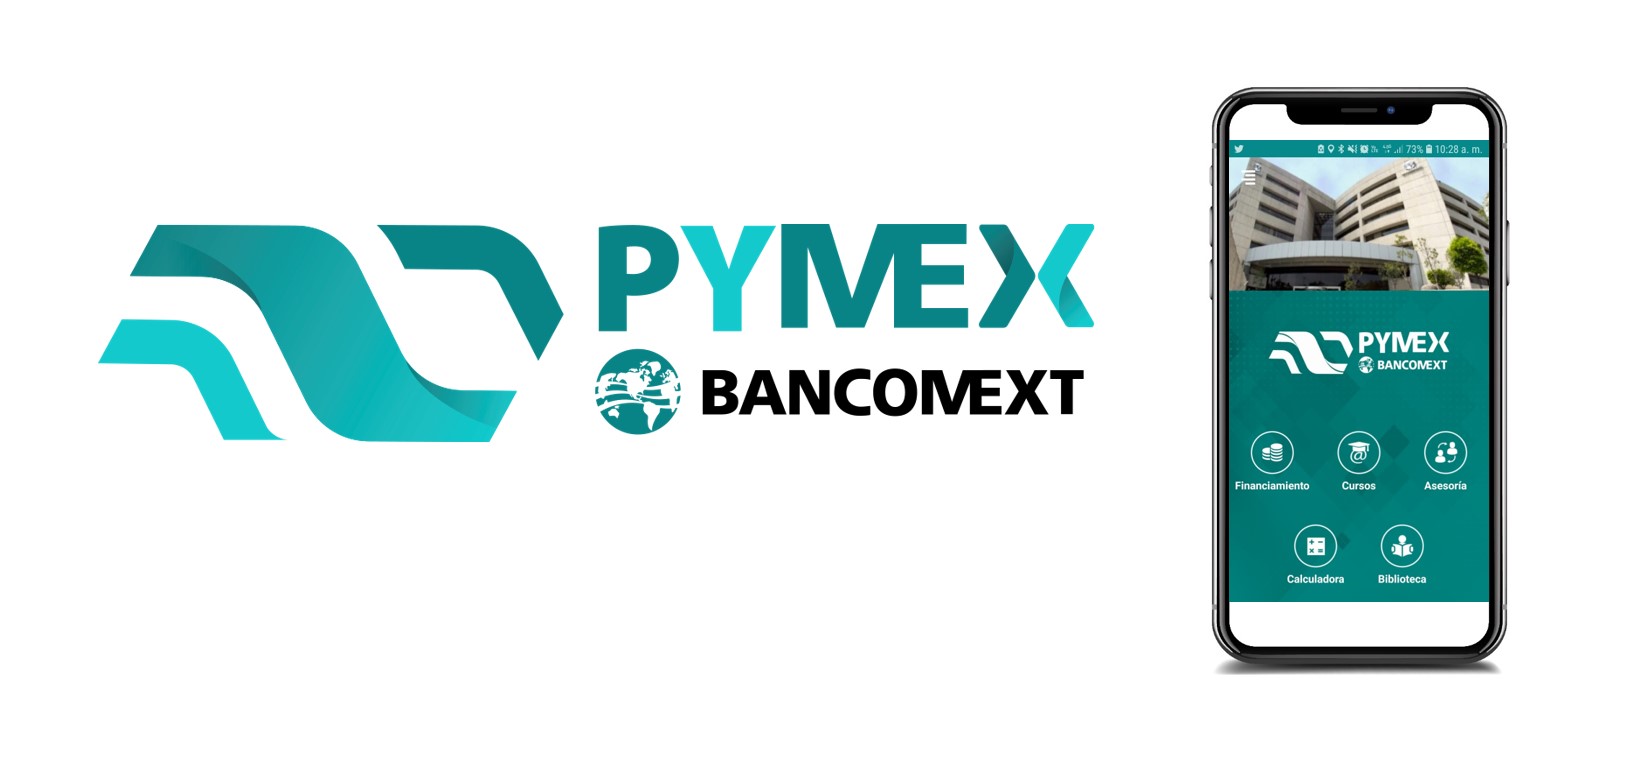 App "Bancomext PyMEx"           